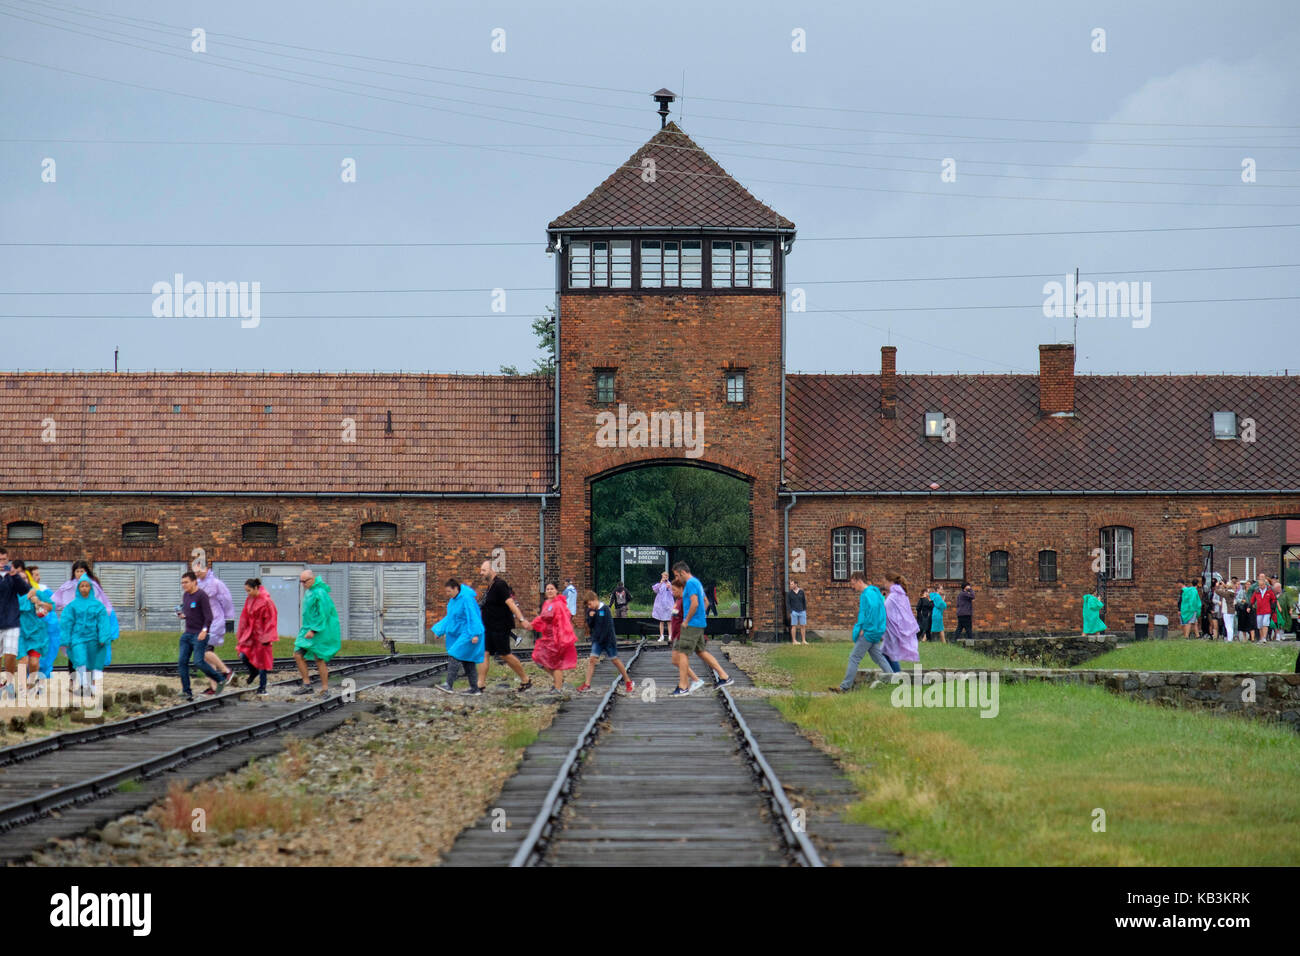 Les touristes de passage en face de la porte d'entrée de l'Auschwitz II Birkenau camp de concentration nazi de la DEUXIÈME GUERRE MONDIALE, Pologne Banque D'Images